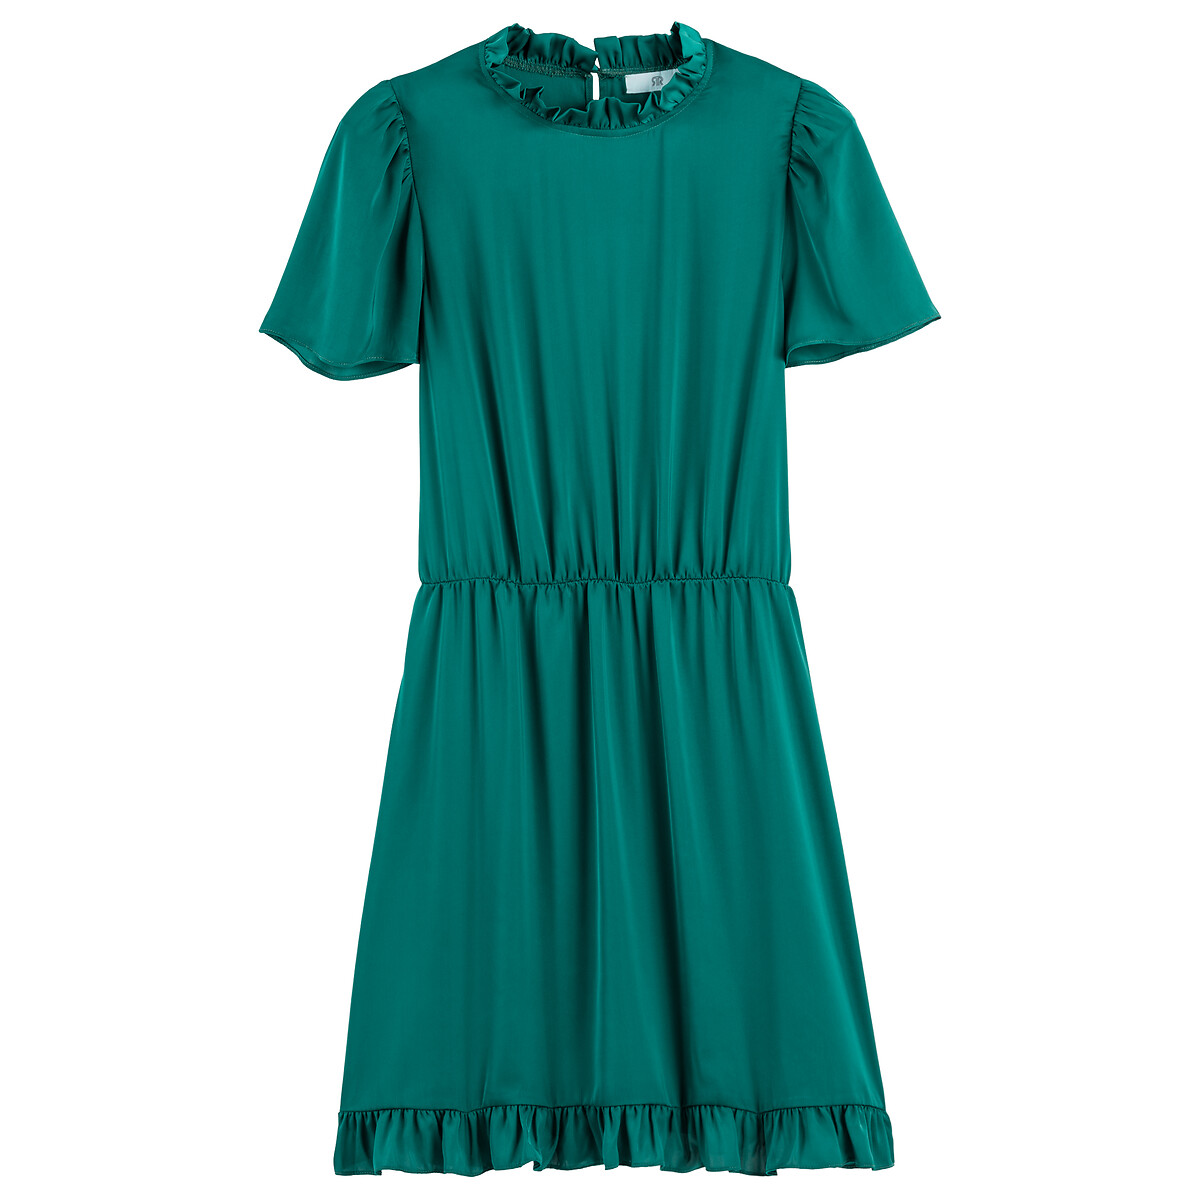 Платье Короткое воротник-стойка с воланом короткие рукава 42 зеленый LaRedoute, размер 42 - фото 5